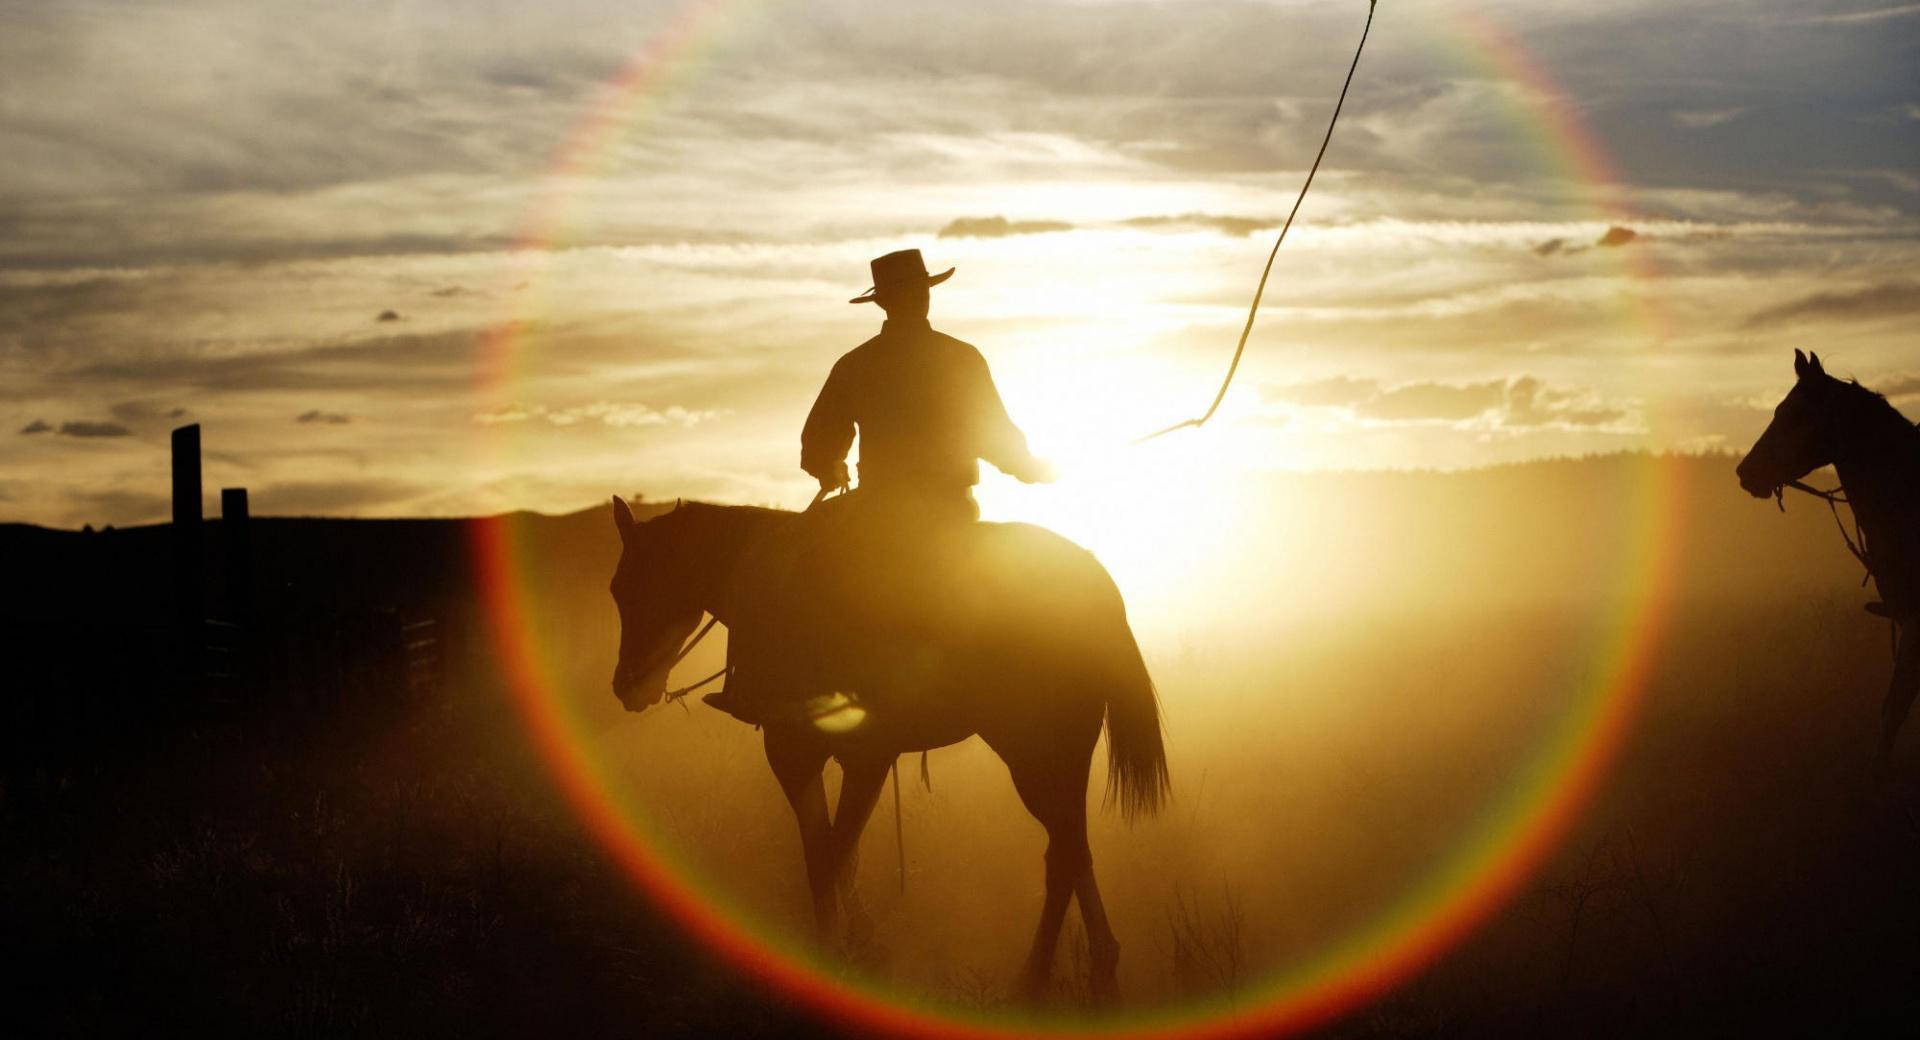 Quarter Horse Ponderosa Ranch Seneca Oregon at 640 x 960 iPhone 4 size wallpapers HD quality